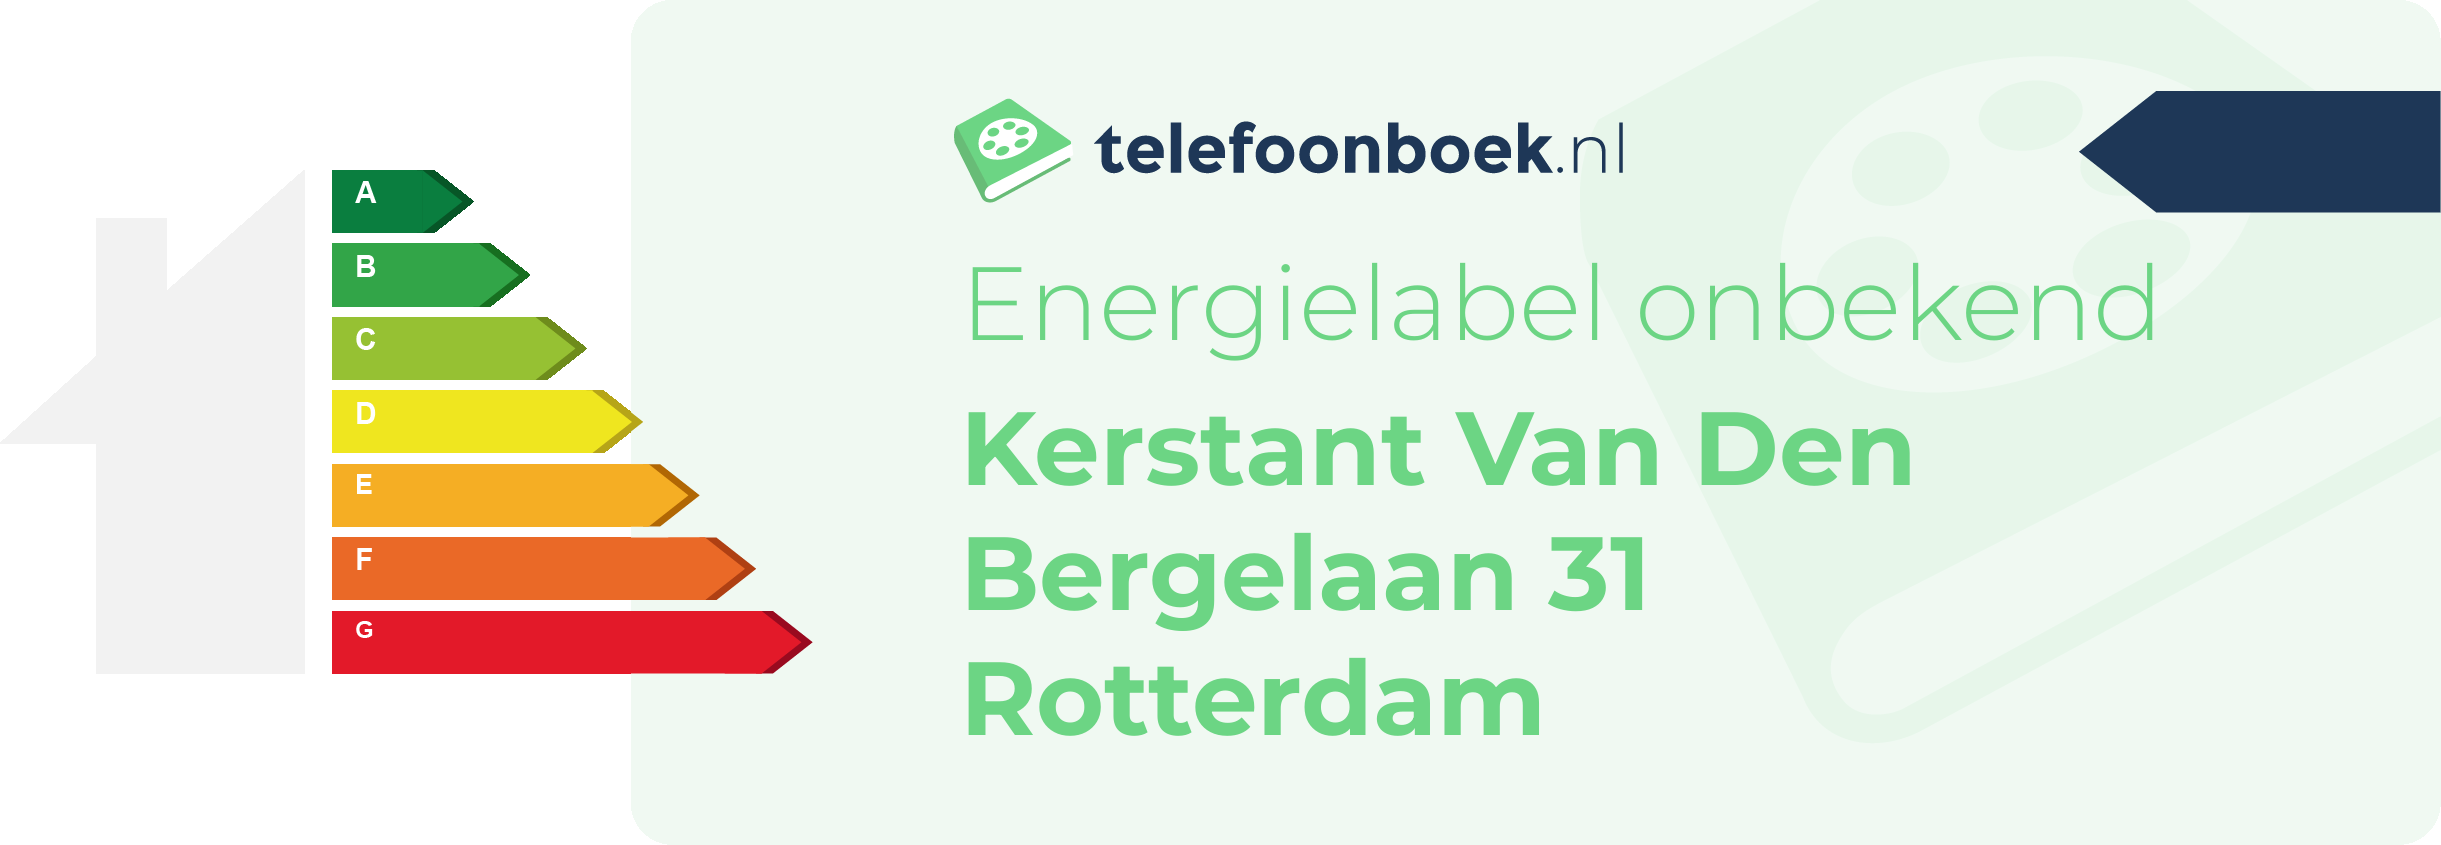 Energielabel Kerstant Van Den Bergelaan 31 Rotterdam